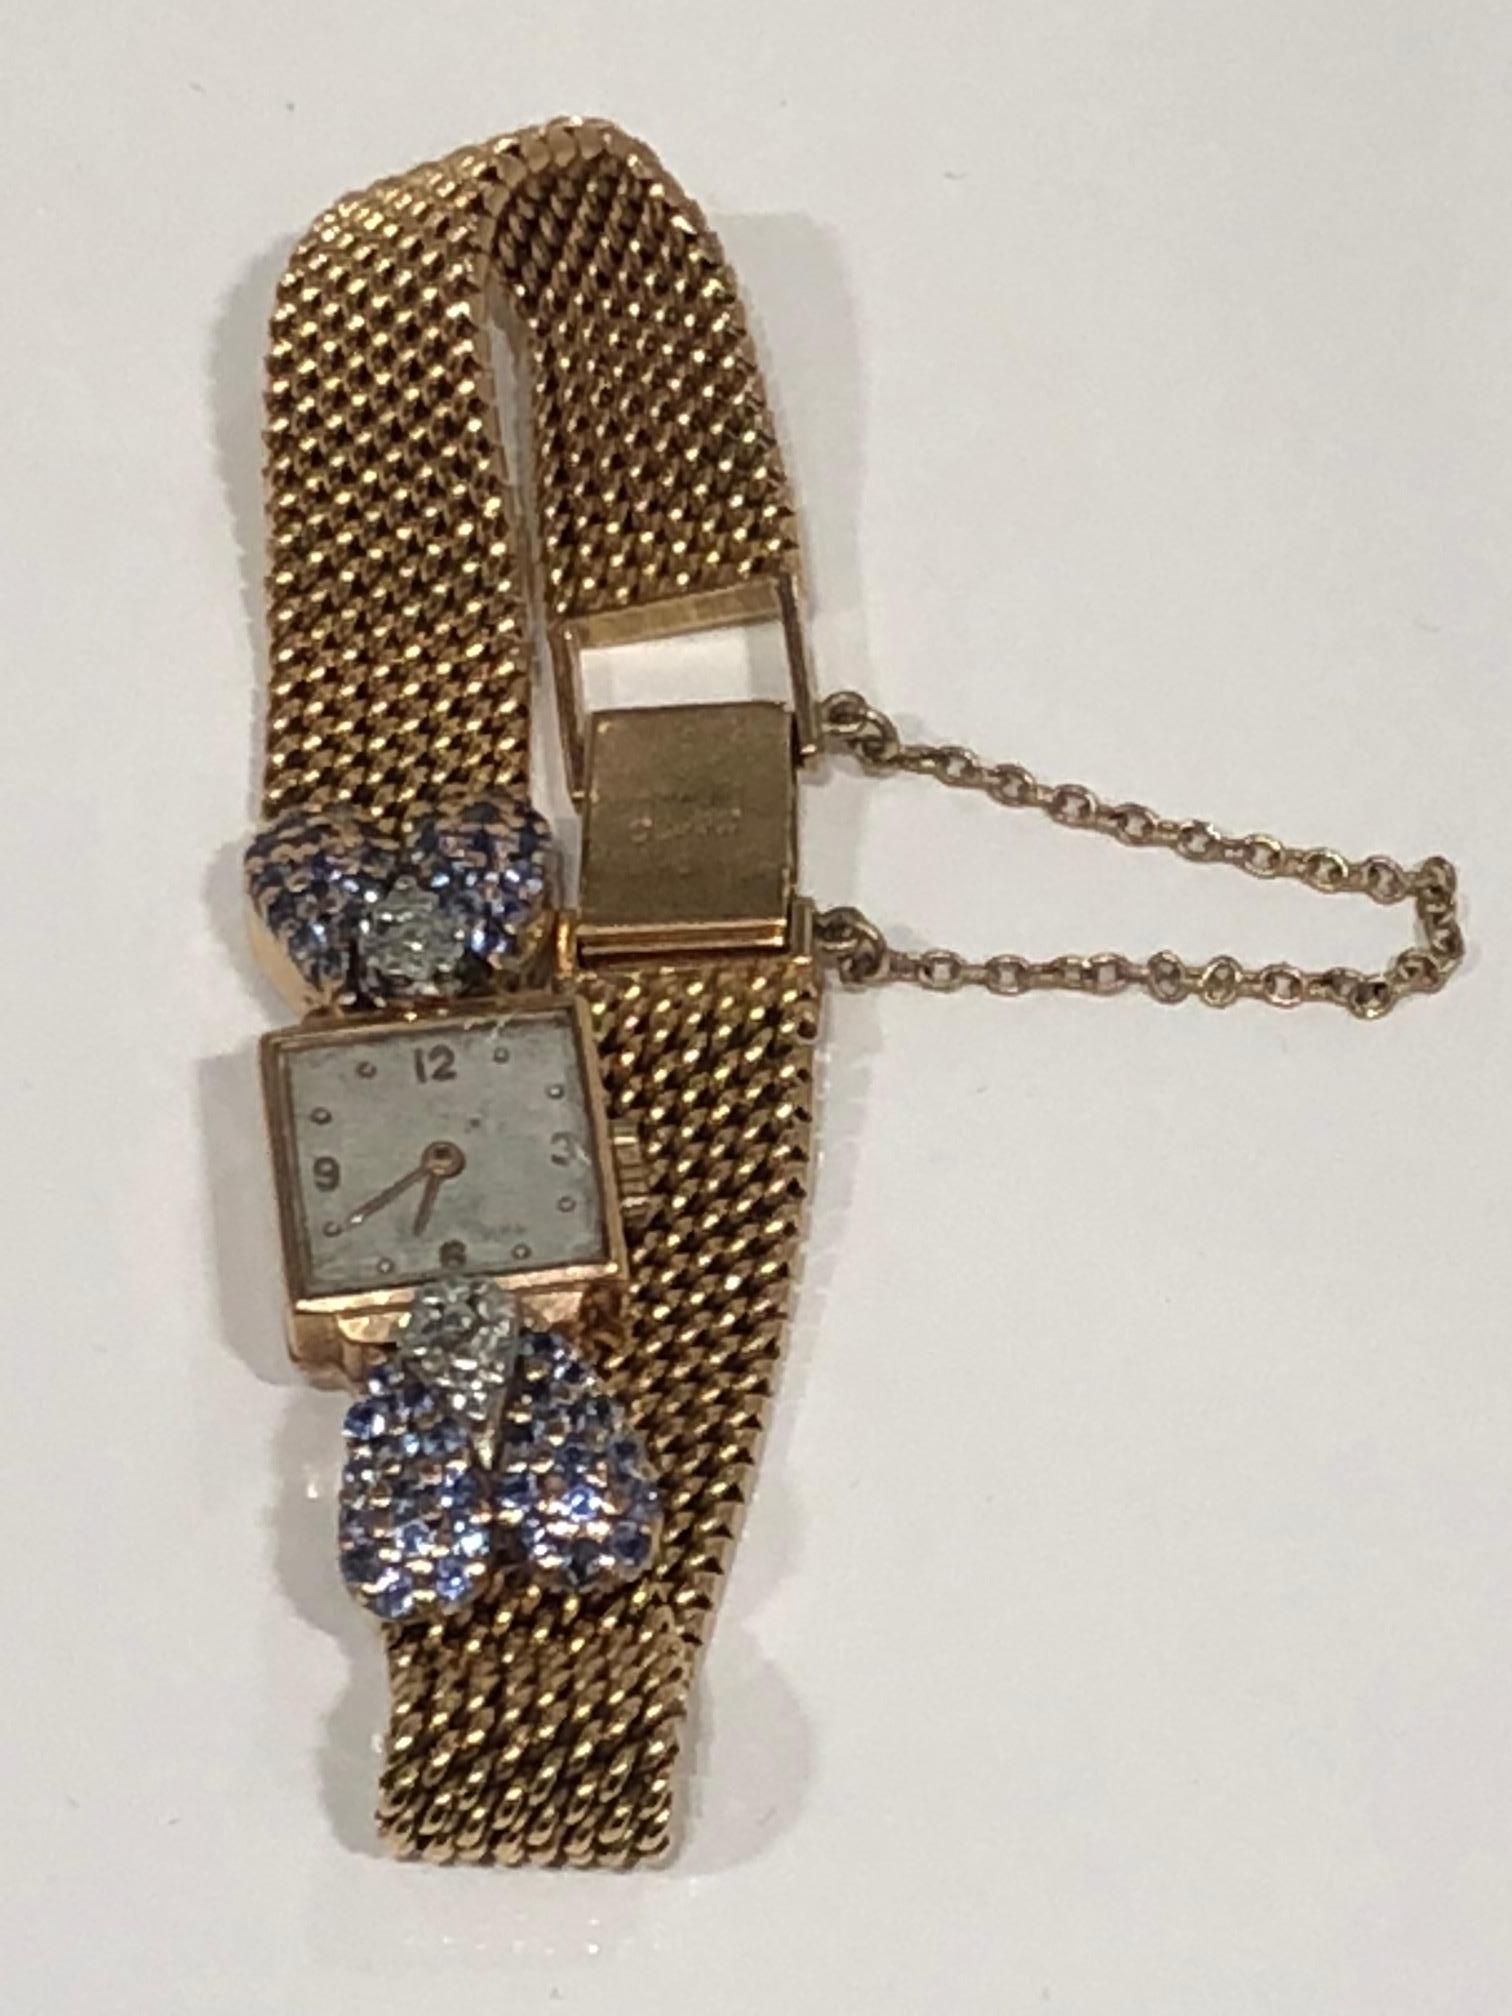 Vintage 18k Gold Damenarmbanduhr, quadratisches Zifferblatt mit goldgewebtem Kettenband mit Diamanten und Ceylonsaphiren besetzt, Verschluss mit Sicherheitskette, gestempelt und nummeriert. um 1940
Handgelenk Band Maßnahmen 7 